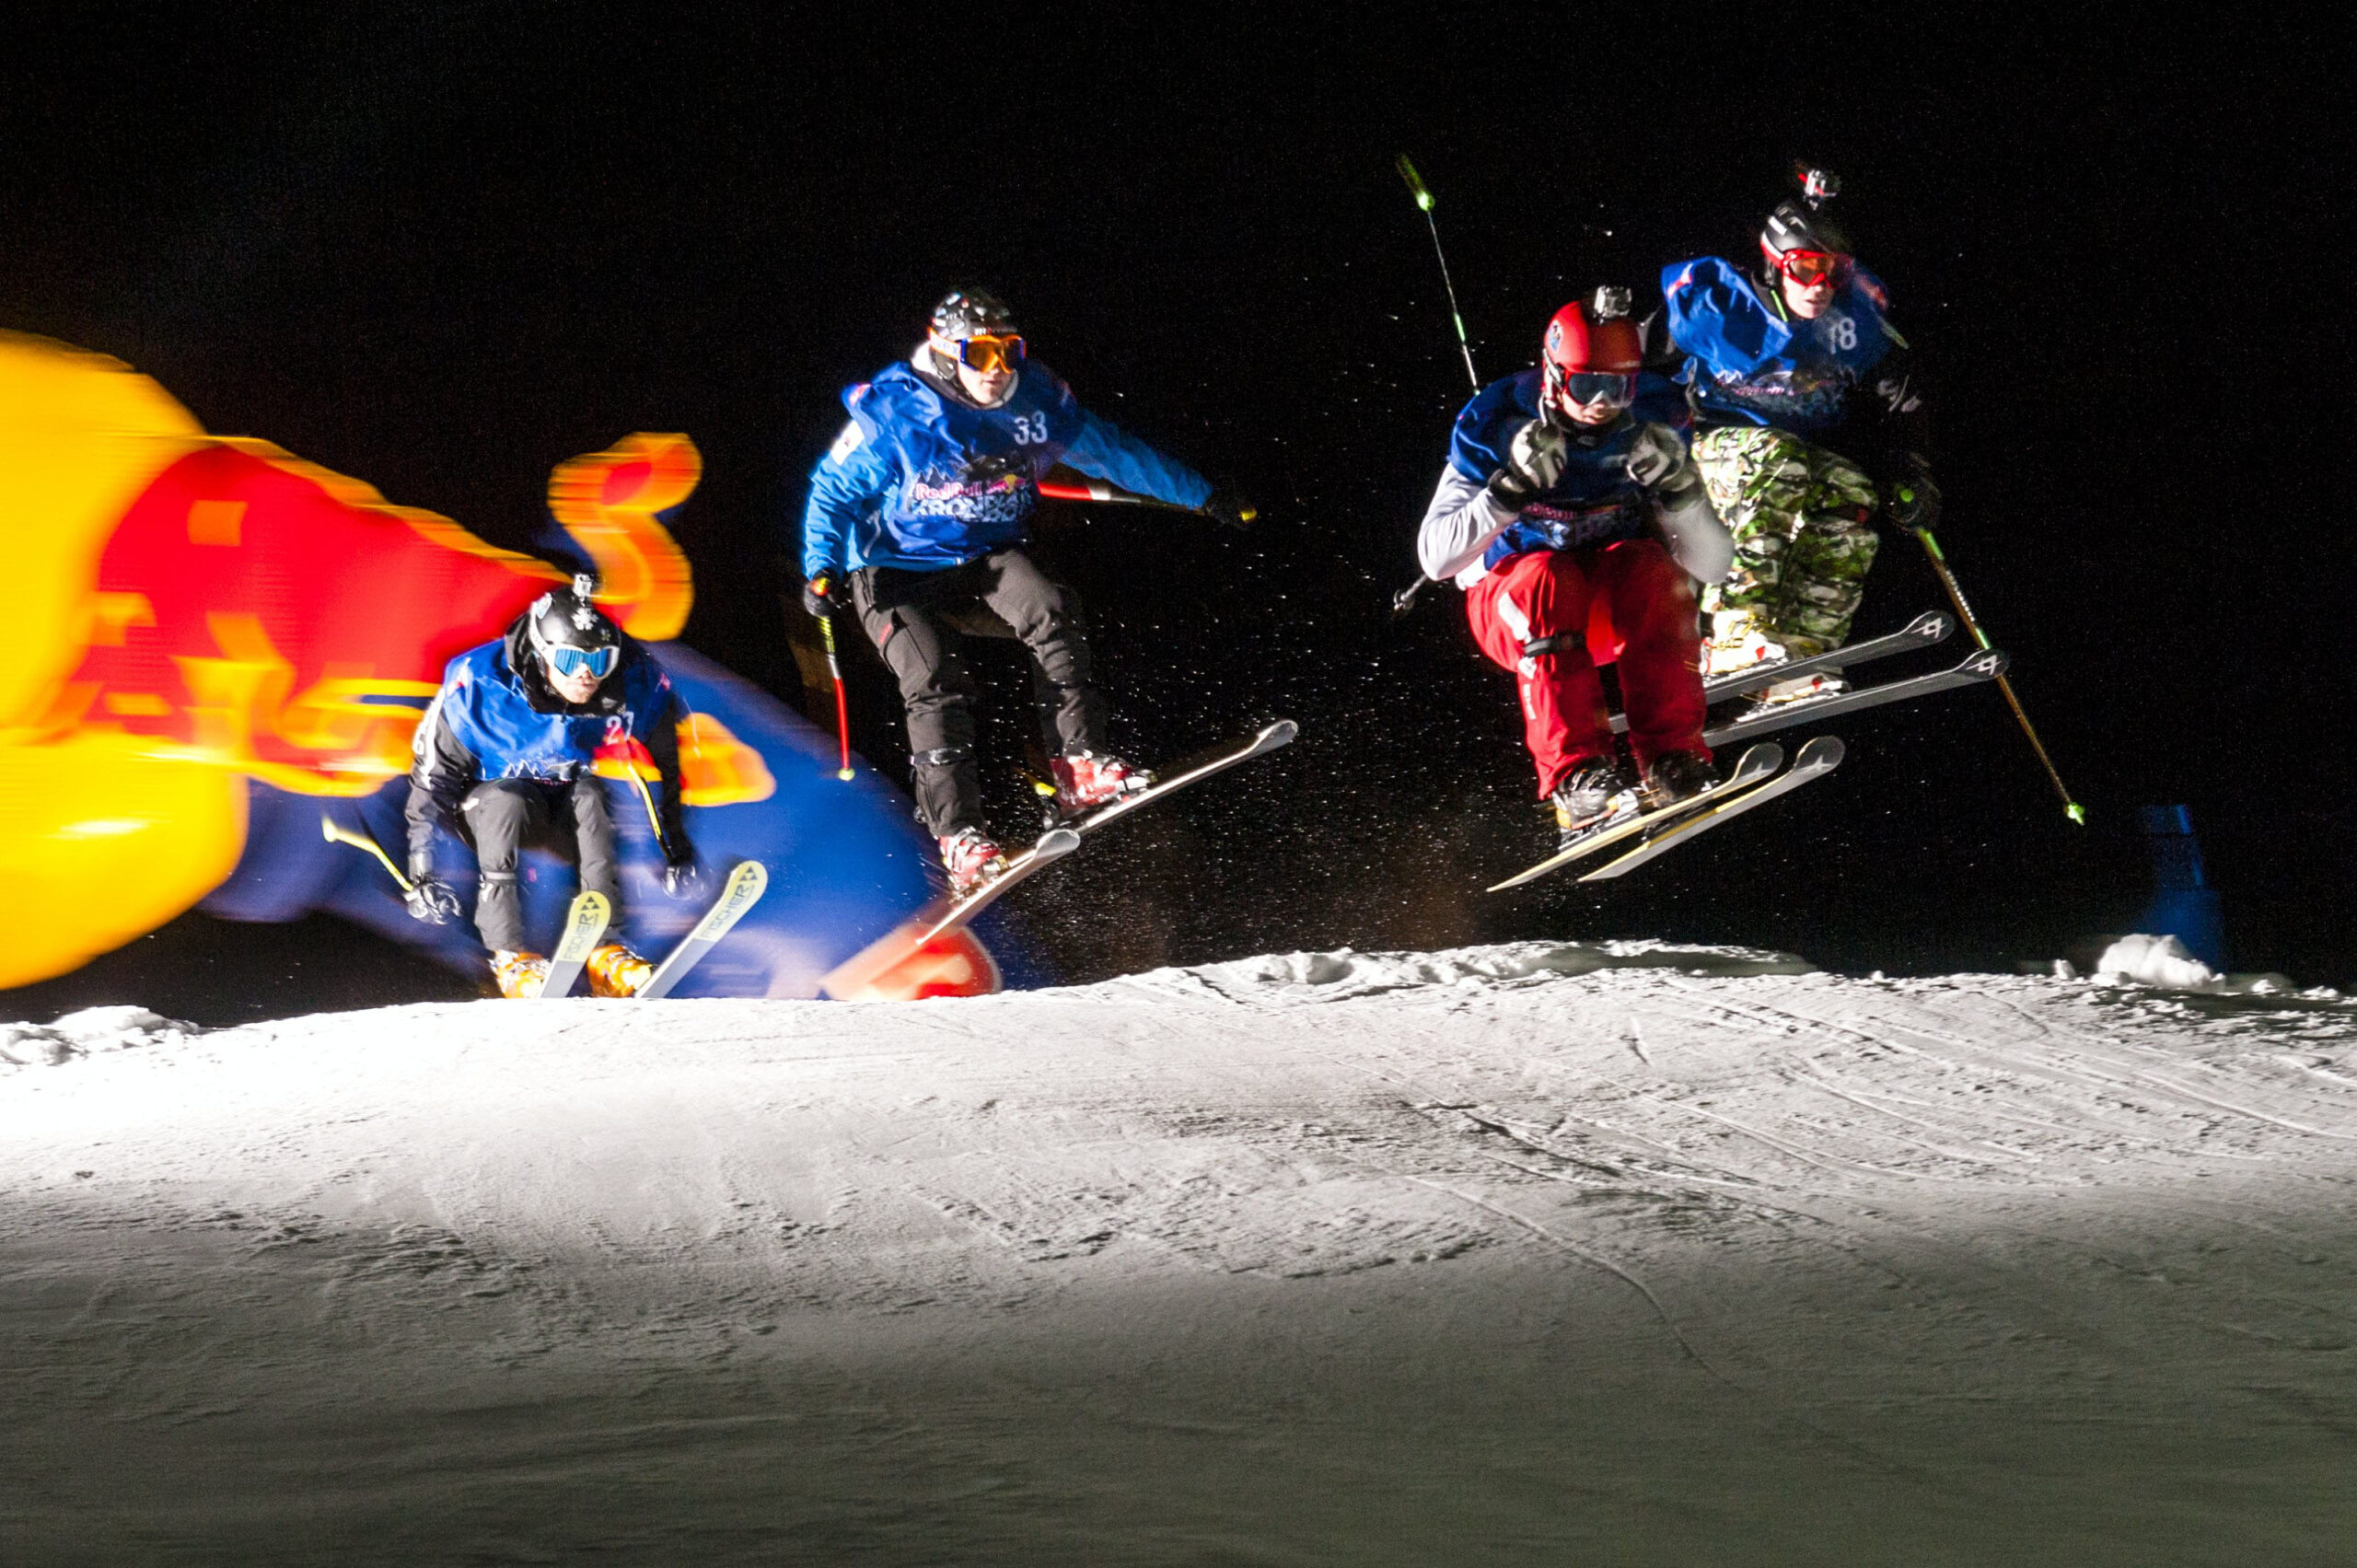 redbull ski contest